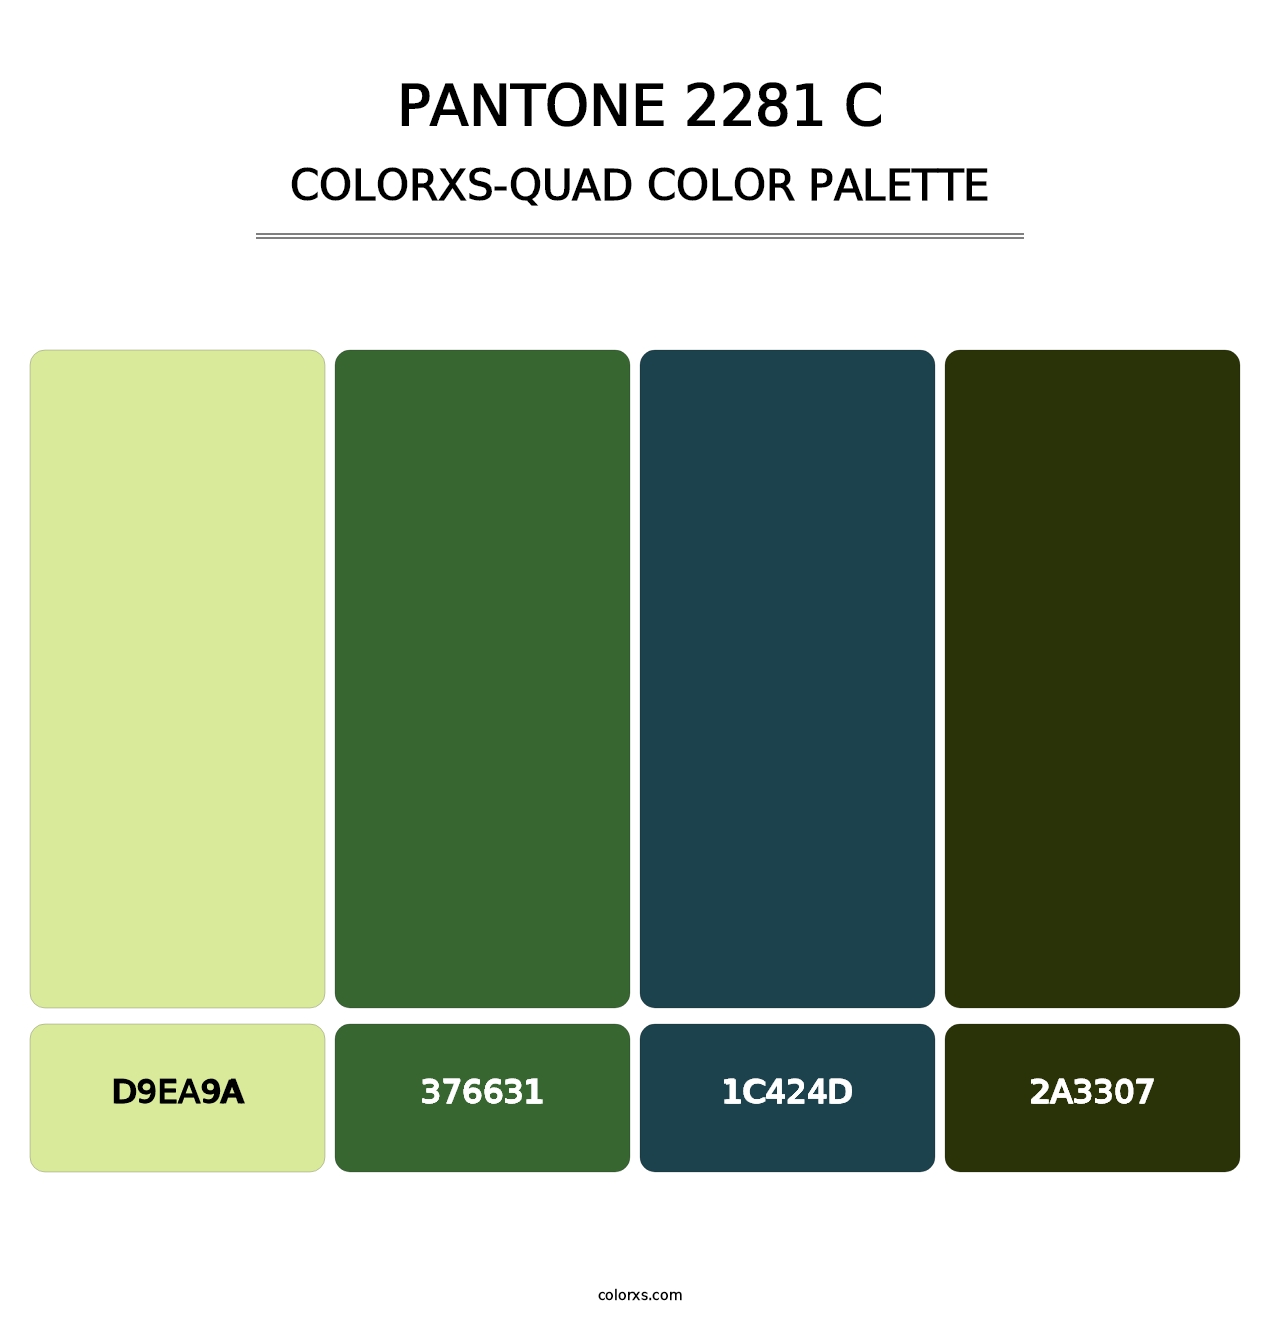 PANTONE 2281 C - Colorxs Quad Palette